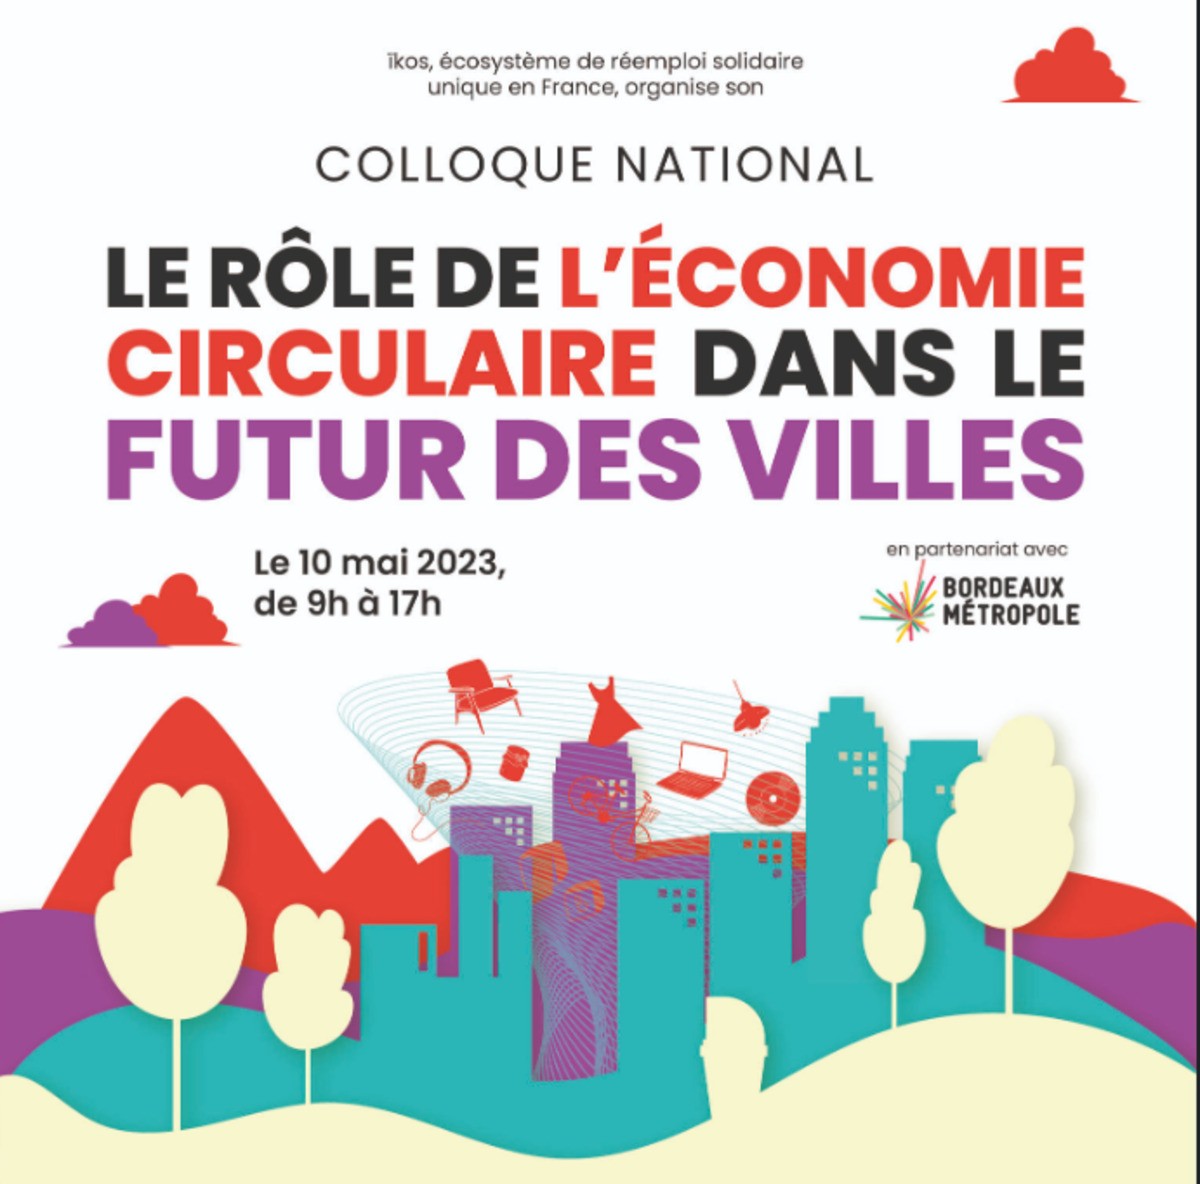 Colloque national : le rôle de l'économie circulaire dans le futur des villes 